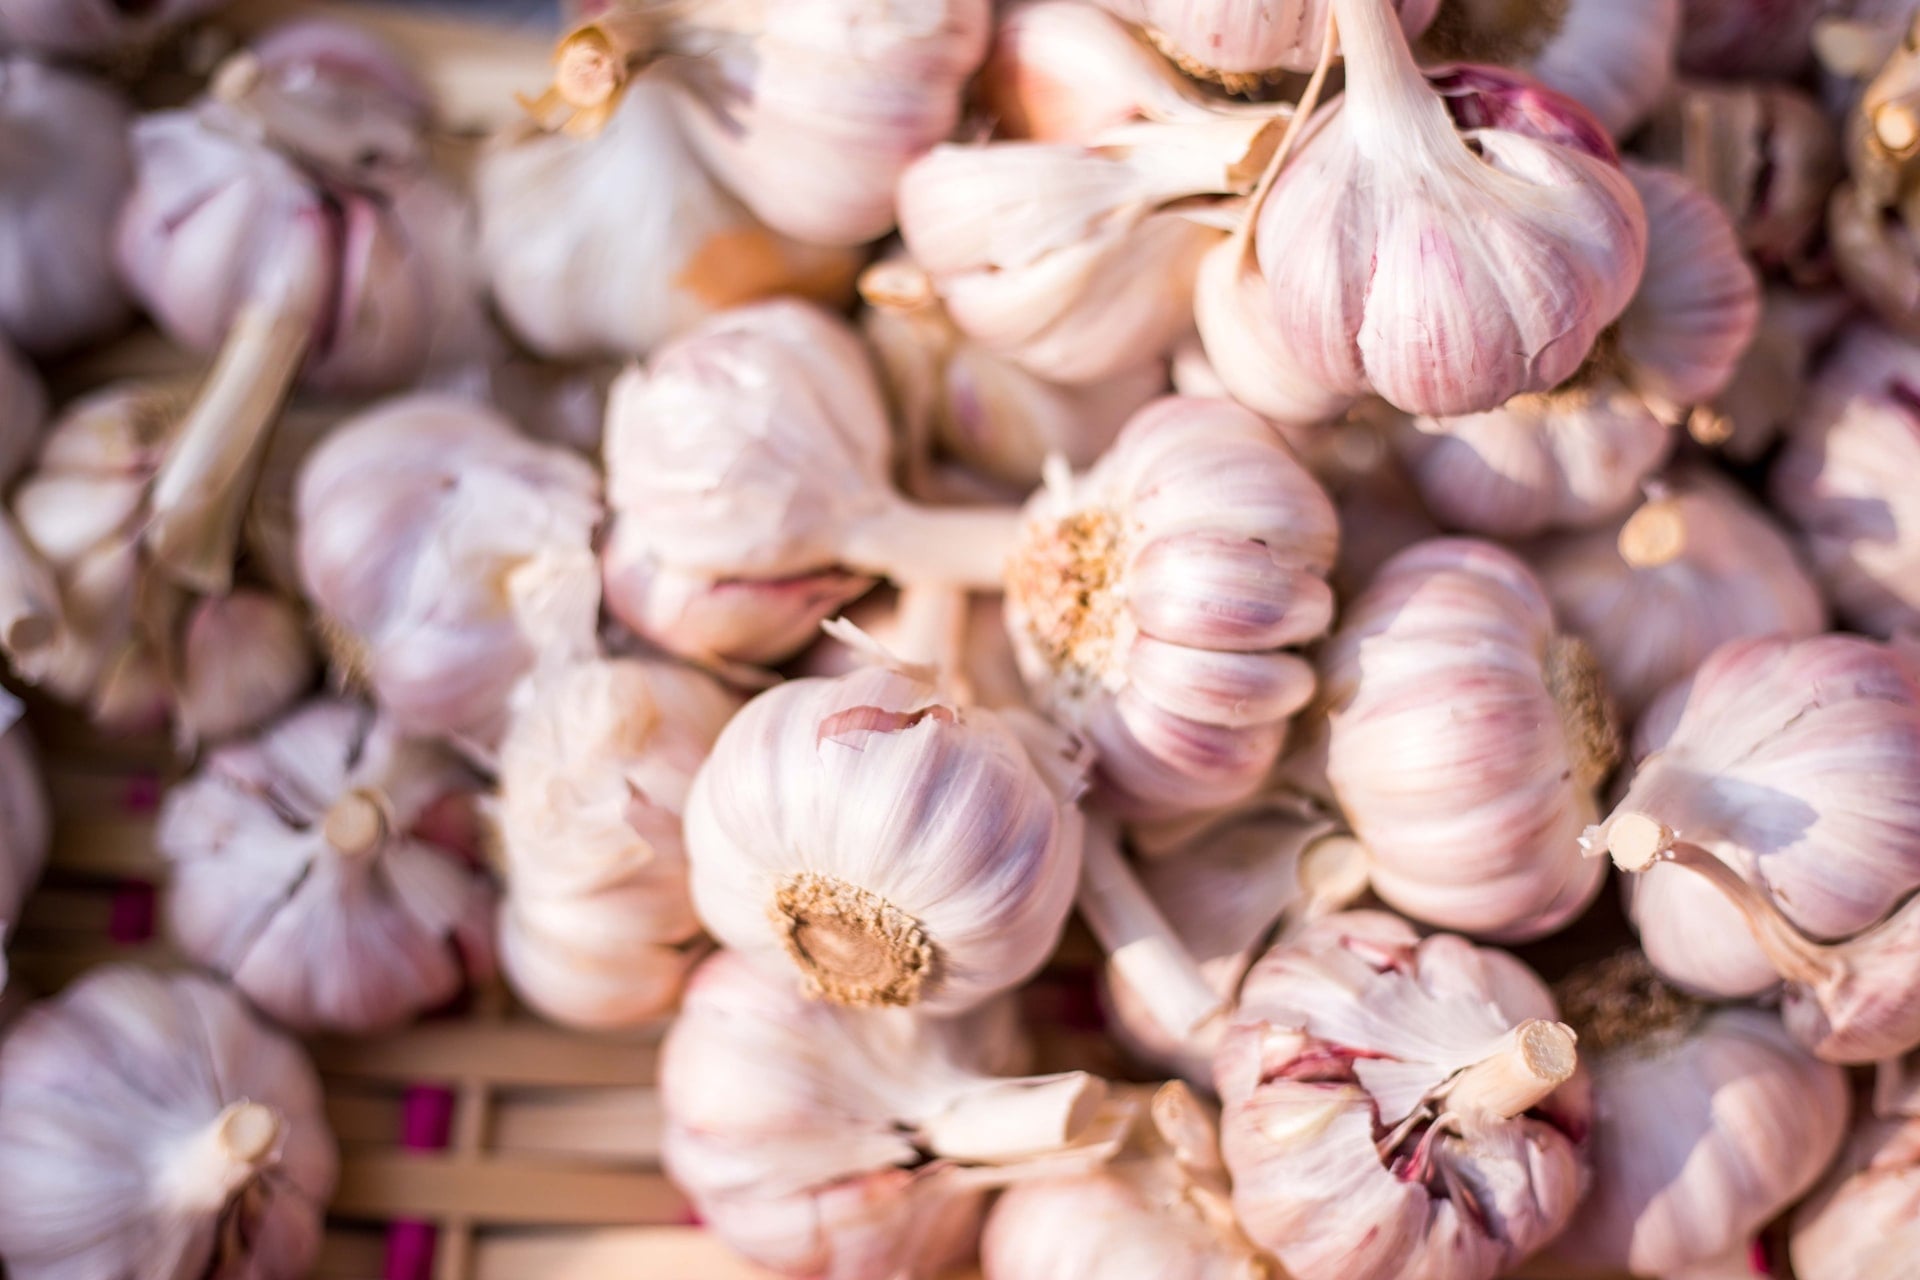 When should I plant Garlic?